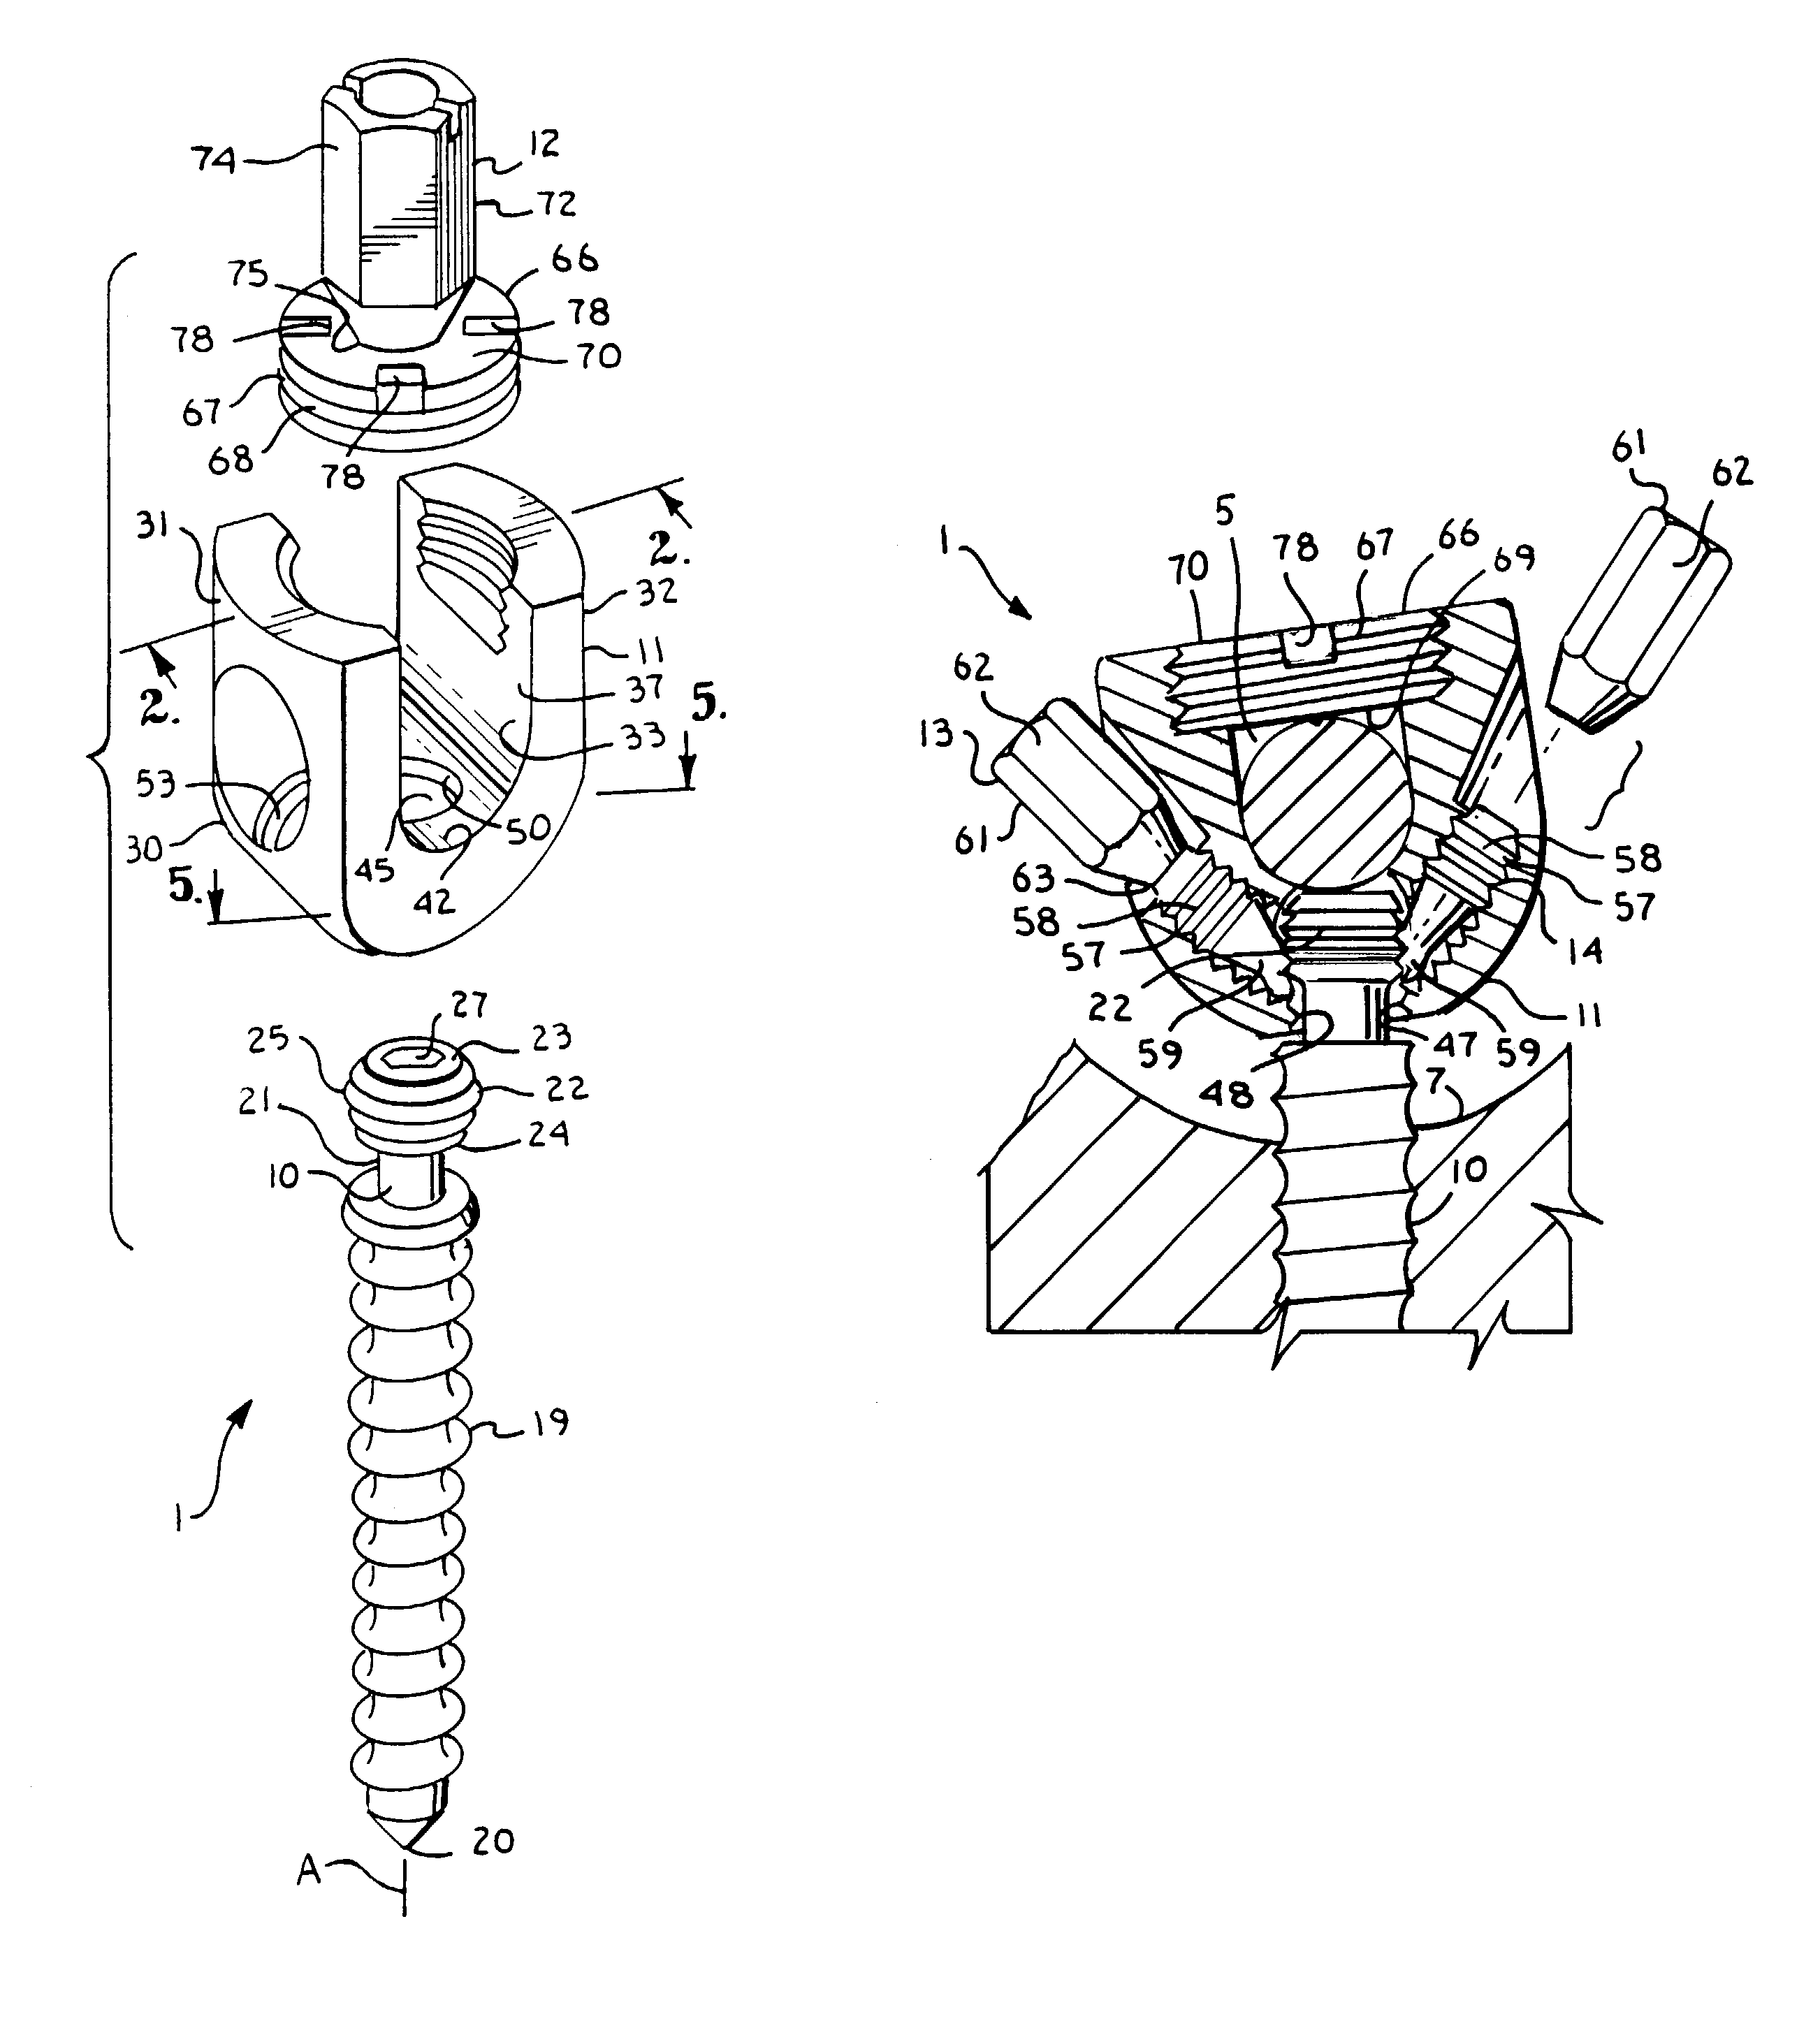 Polyaxial bone screw locking mechanism